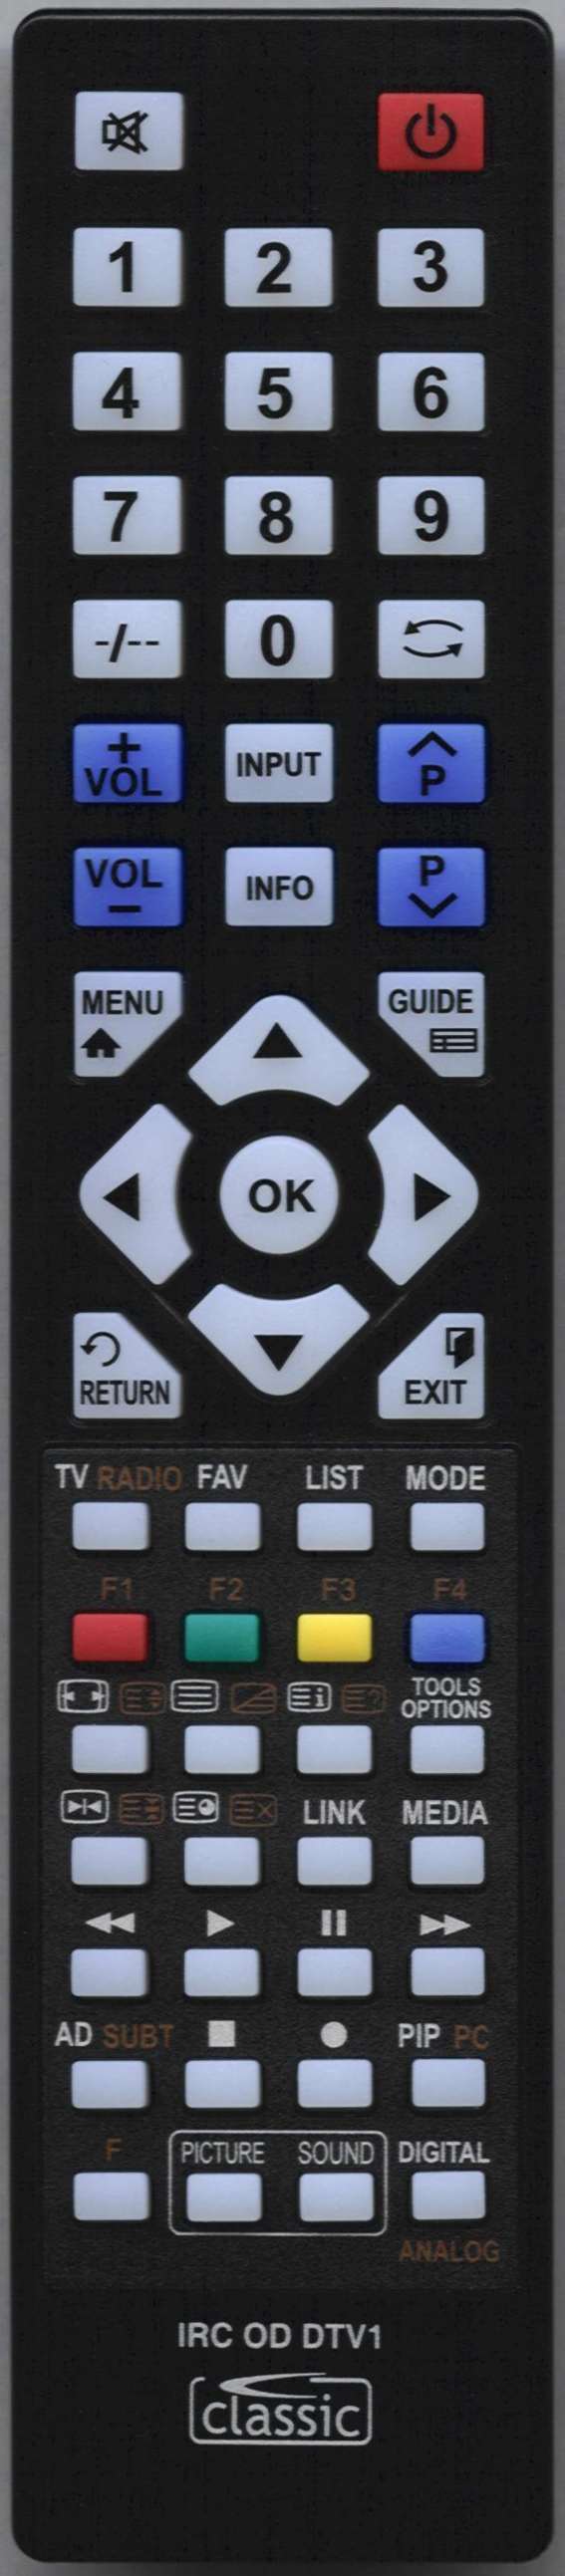 SONY KDL40W5500 Remote Control Alternative